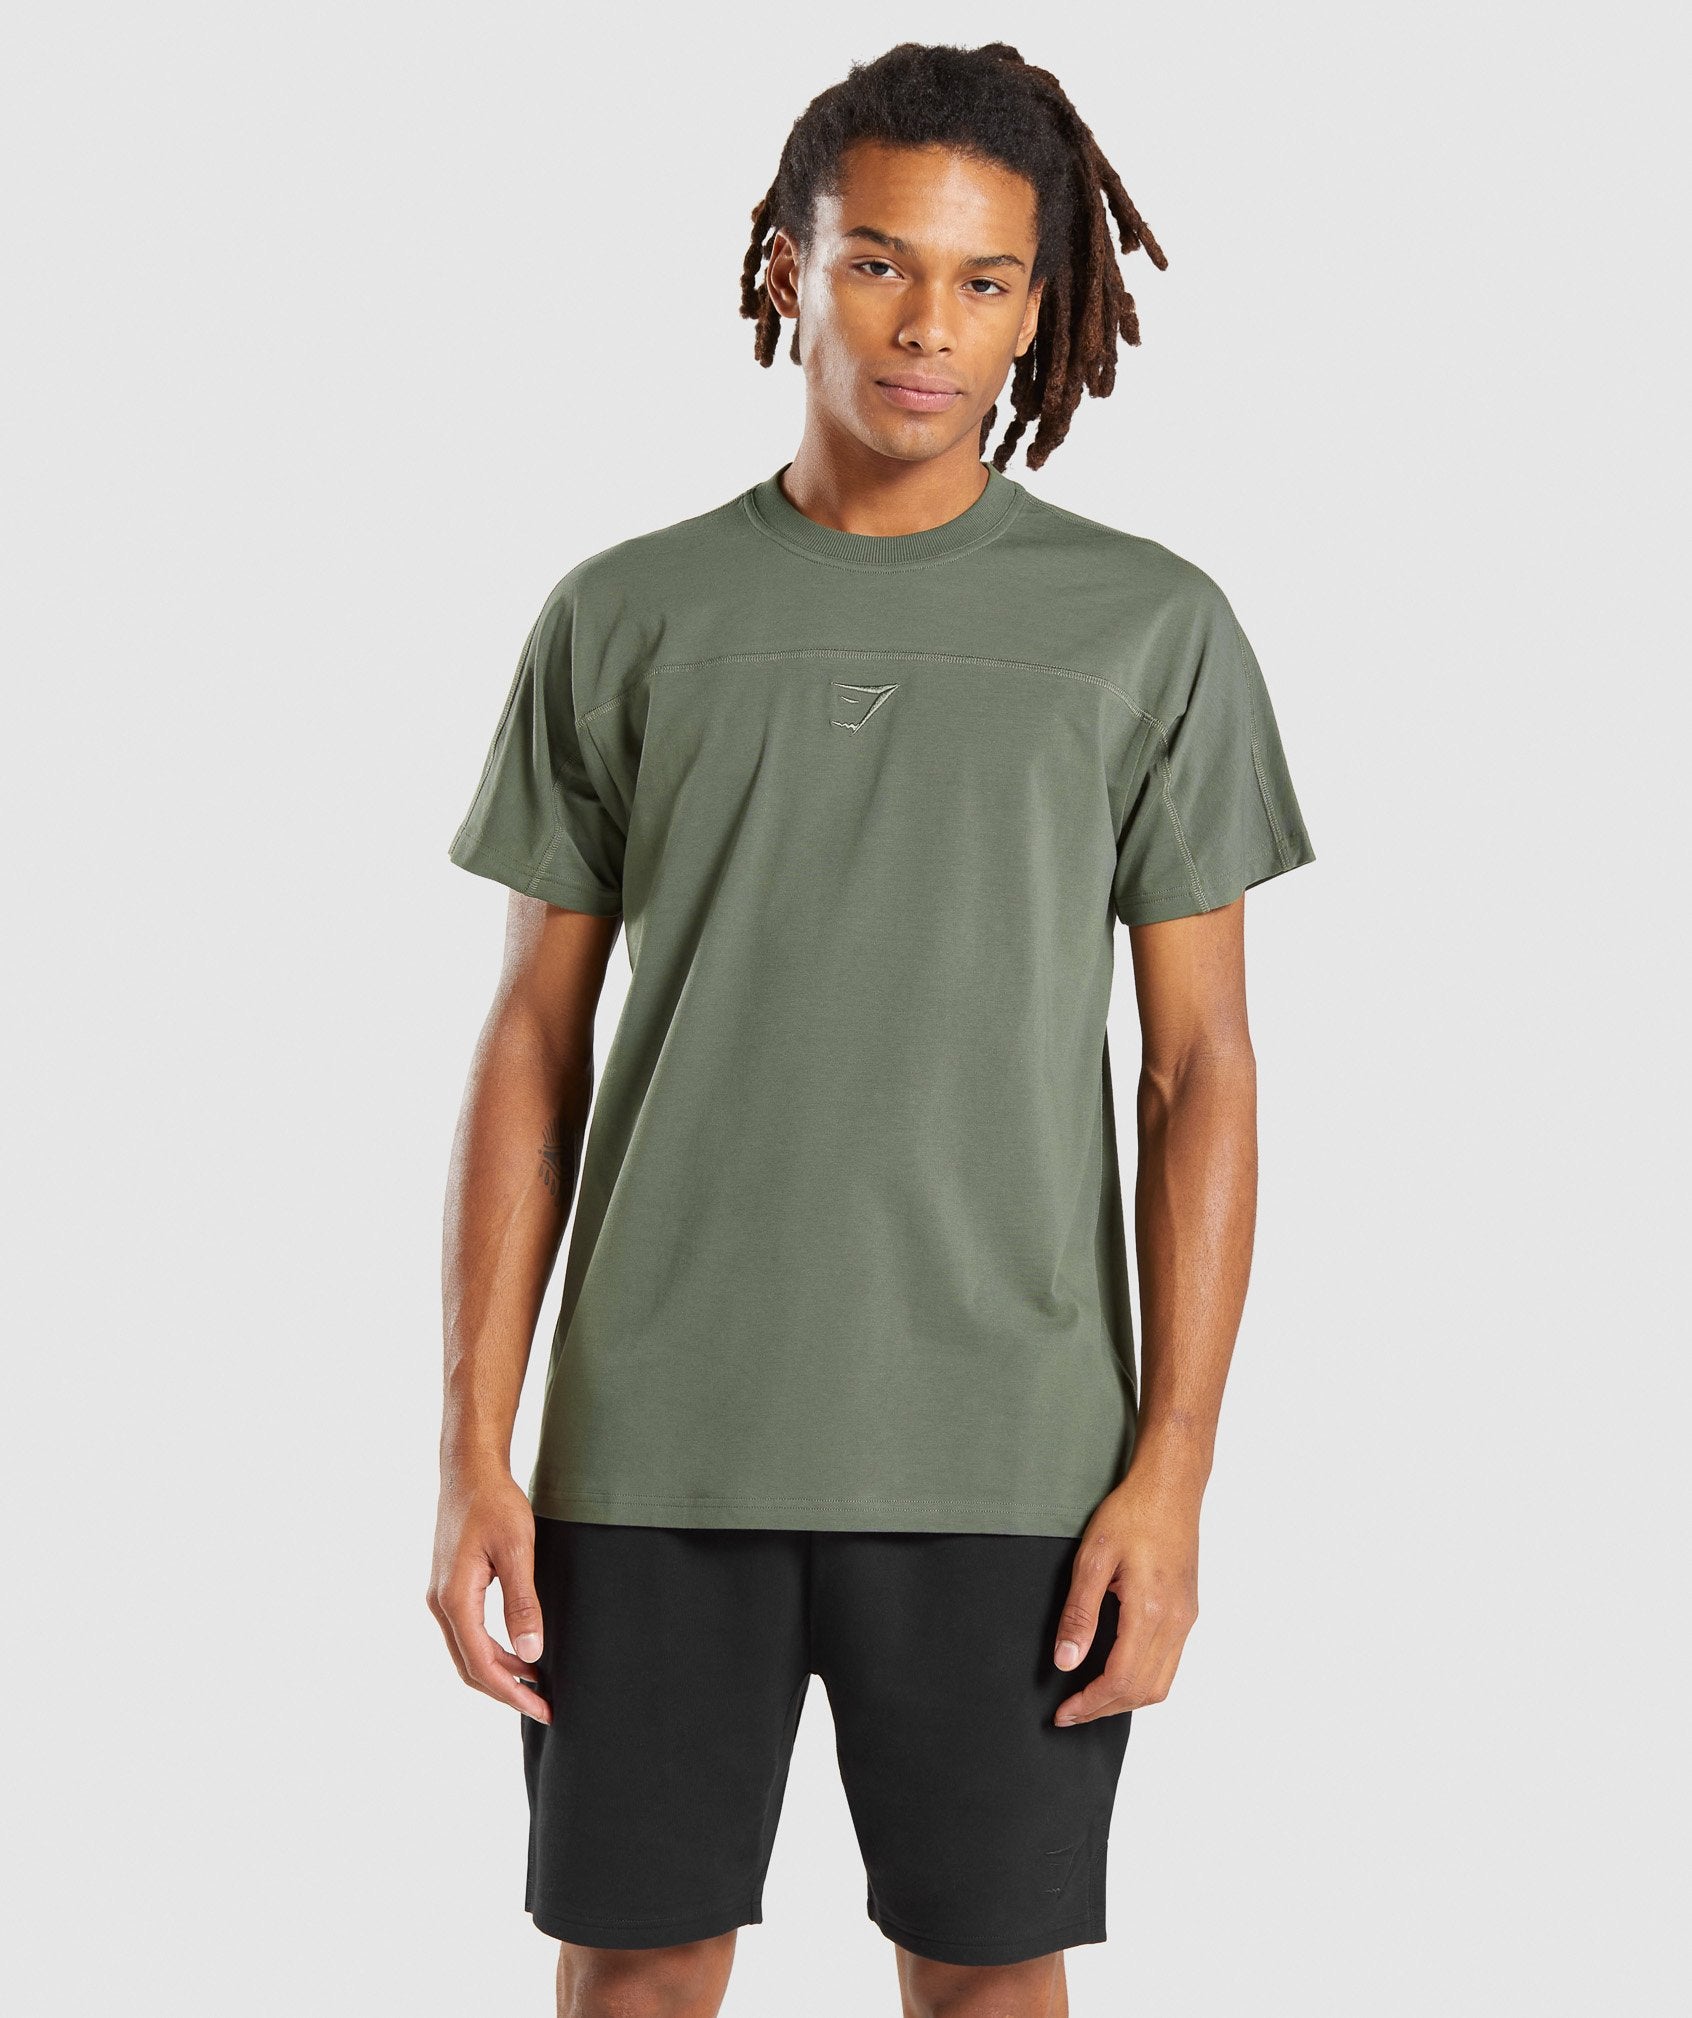 Gymshark Compound T-Shirt - Green | Gymshark